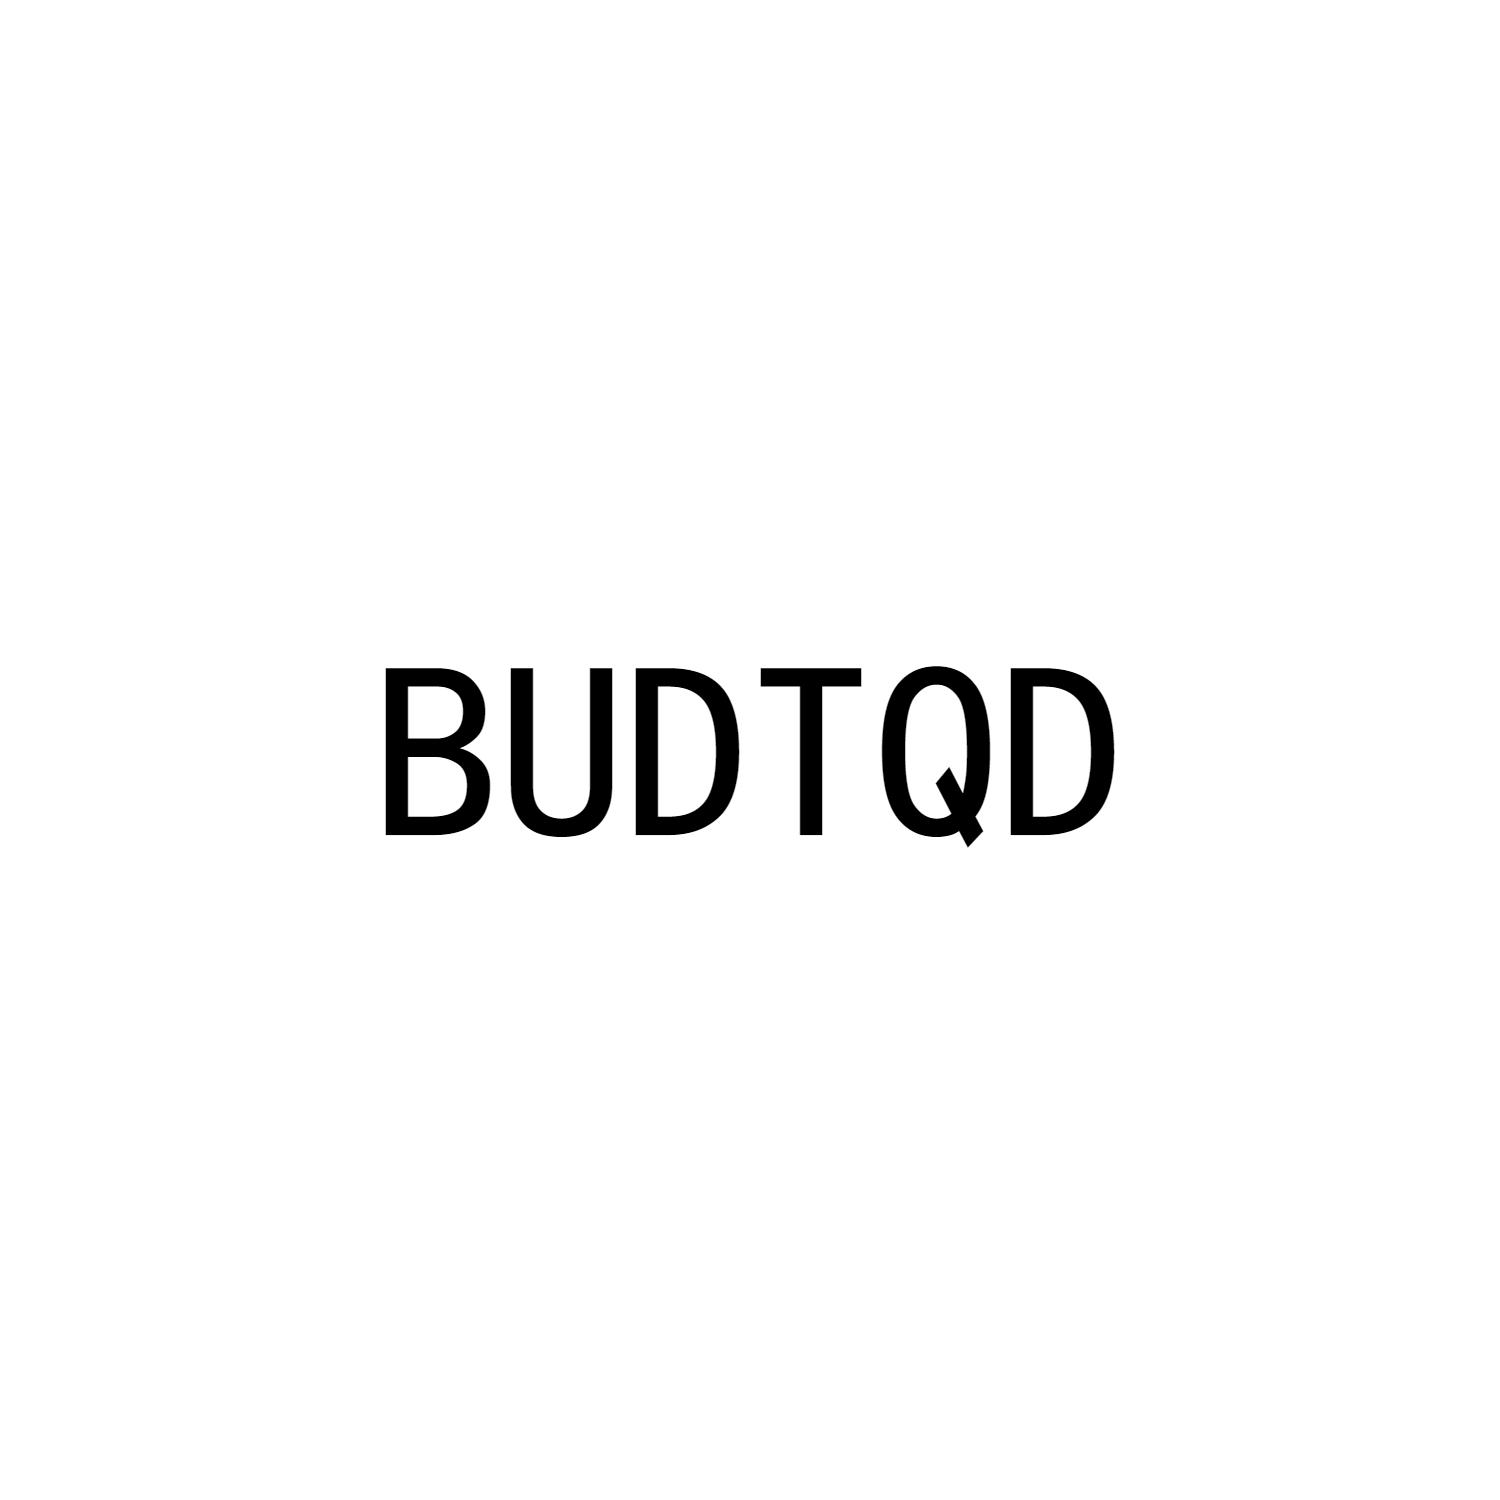 BUDTQD